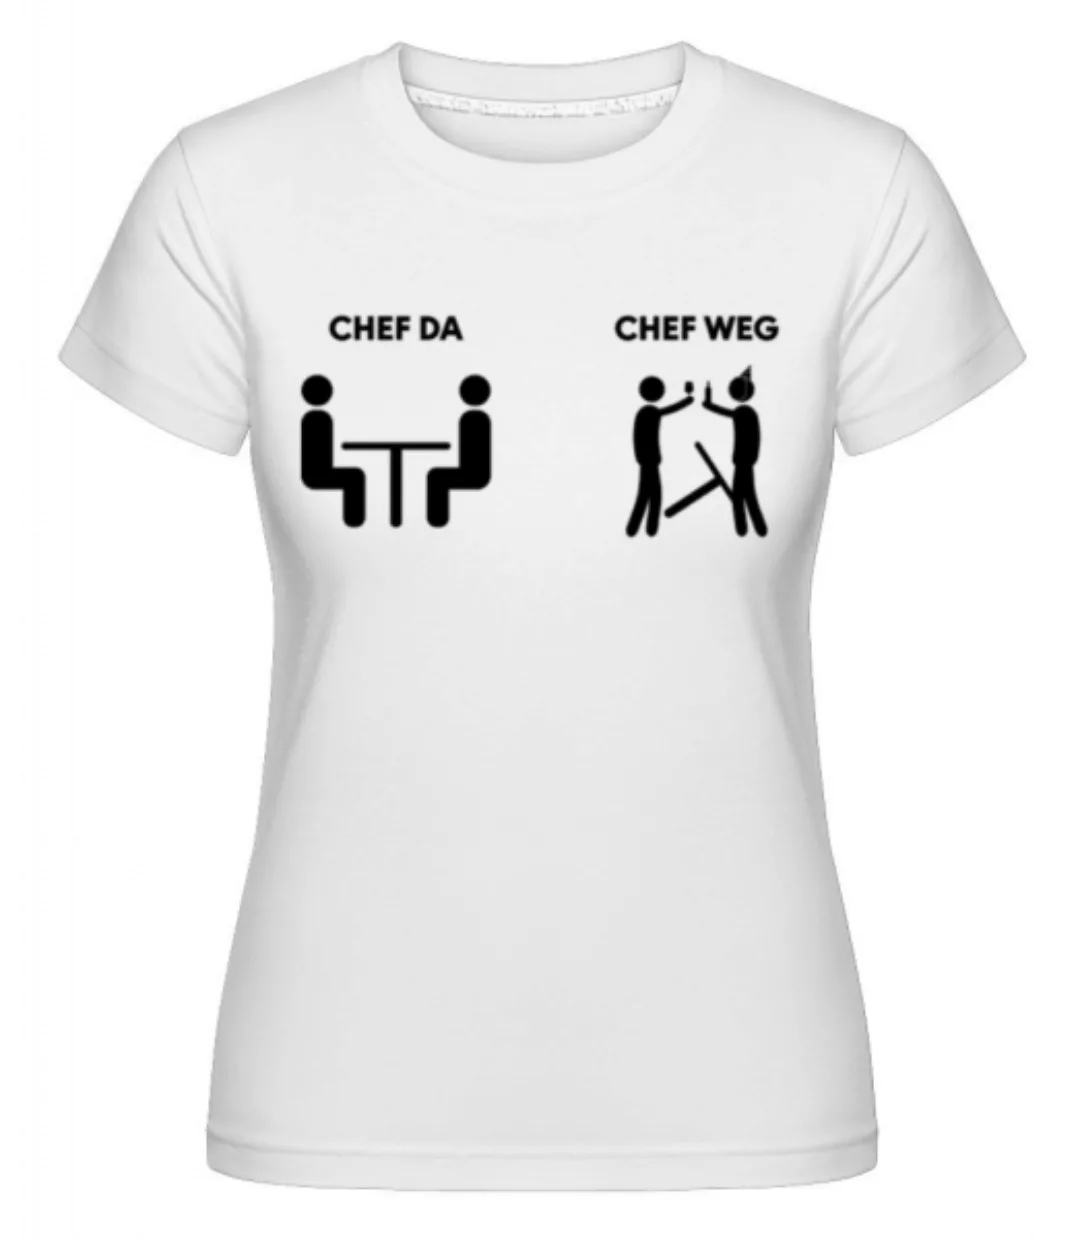 Chef Da Chef Weg · Shirtinator Frauen T-Shirt günstig online kaufen